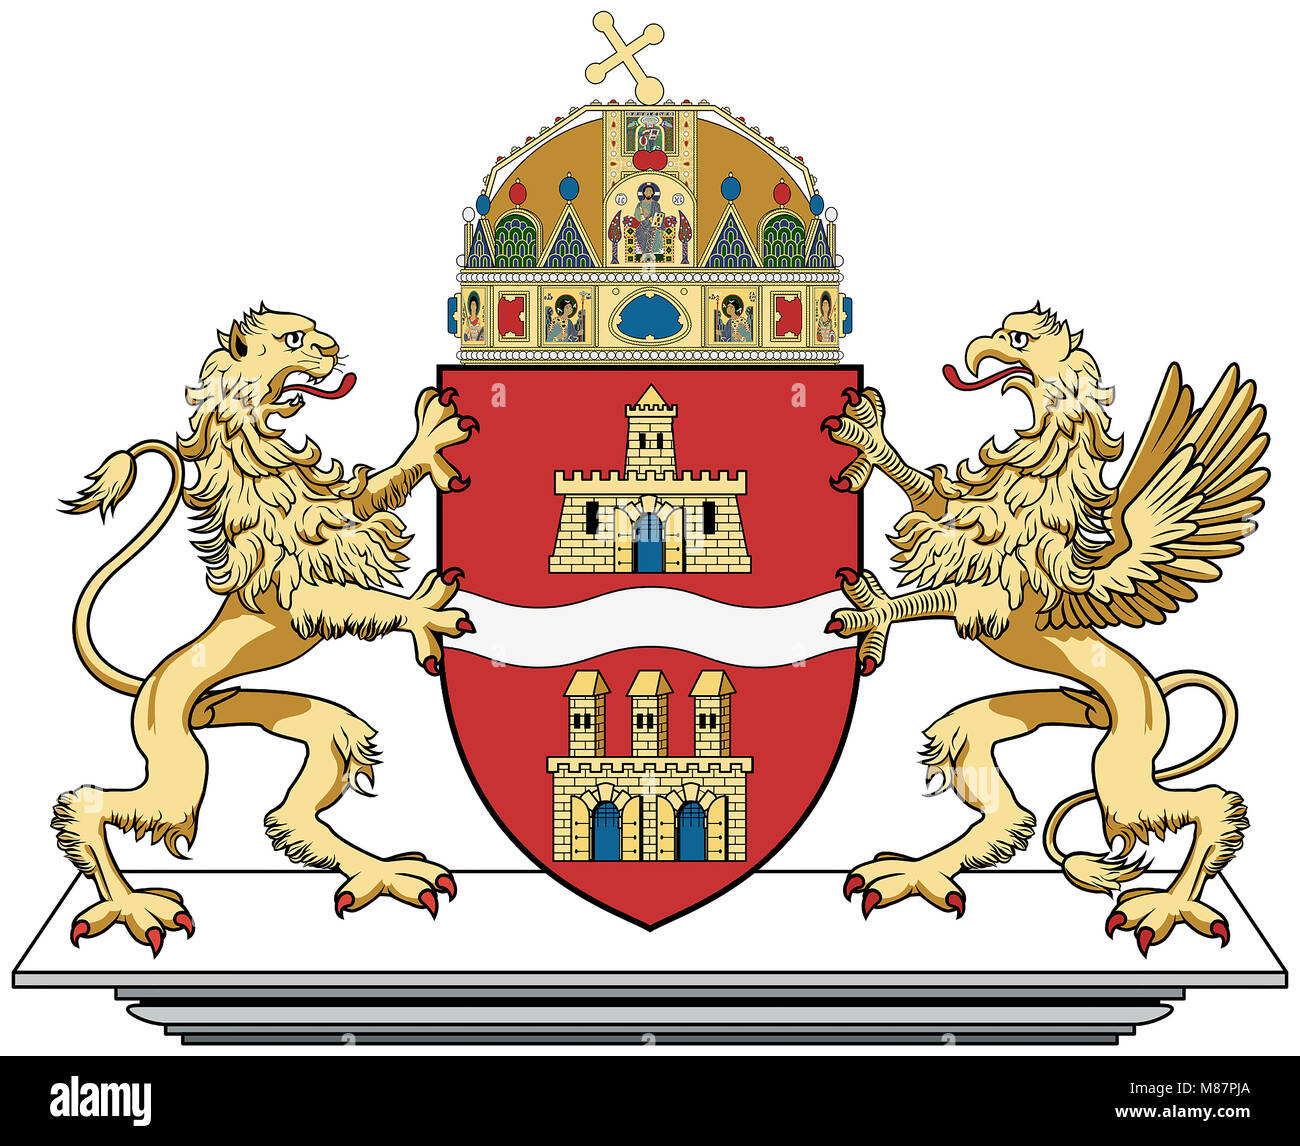 Wappen der ungarischen Hauptstadt Budapest - Ungarn. Stockfoto